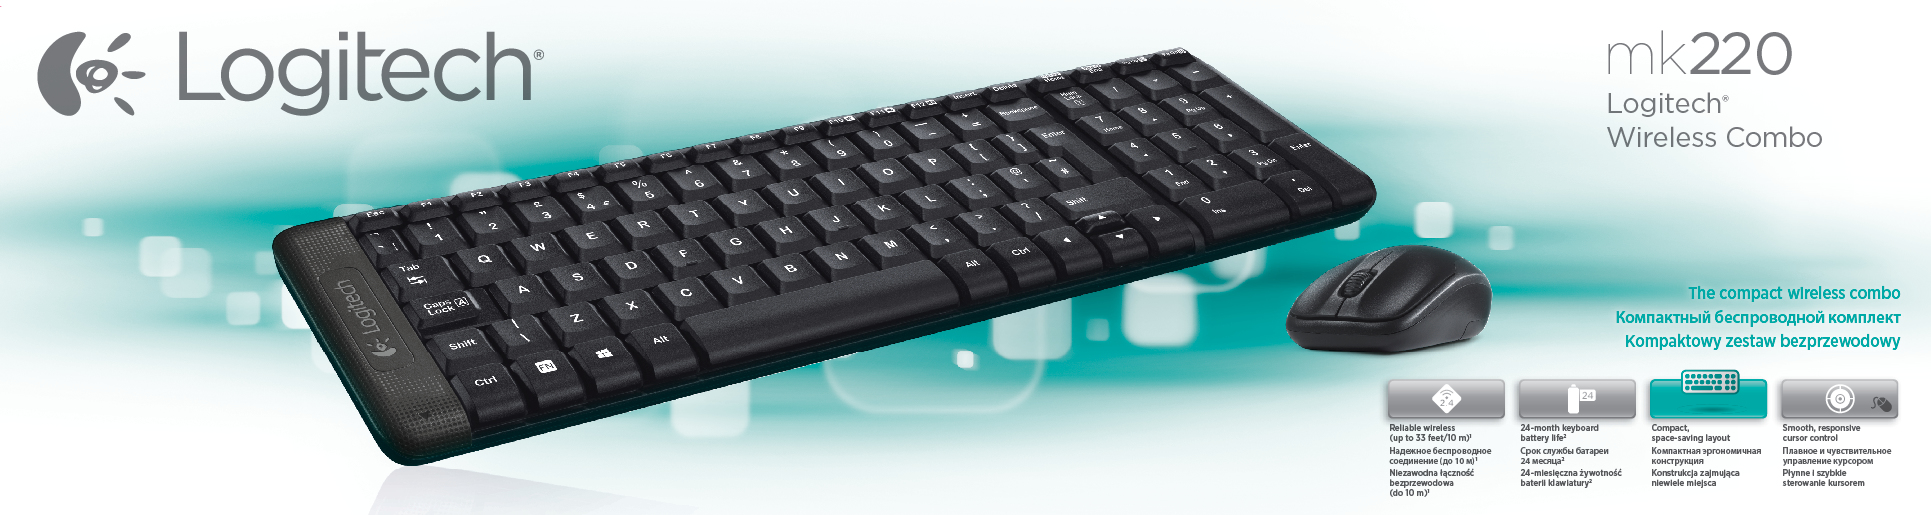 Logitech Wireless Combo MK220 keyboard RF Wireless QWERTY English Black